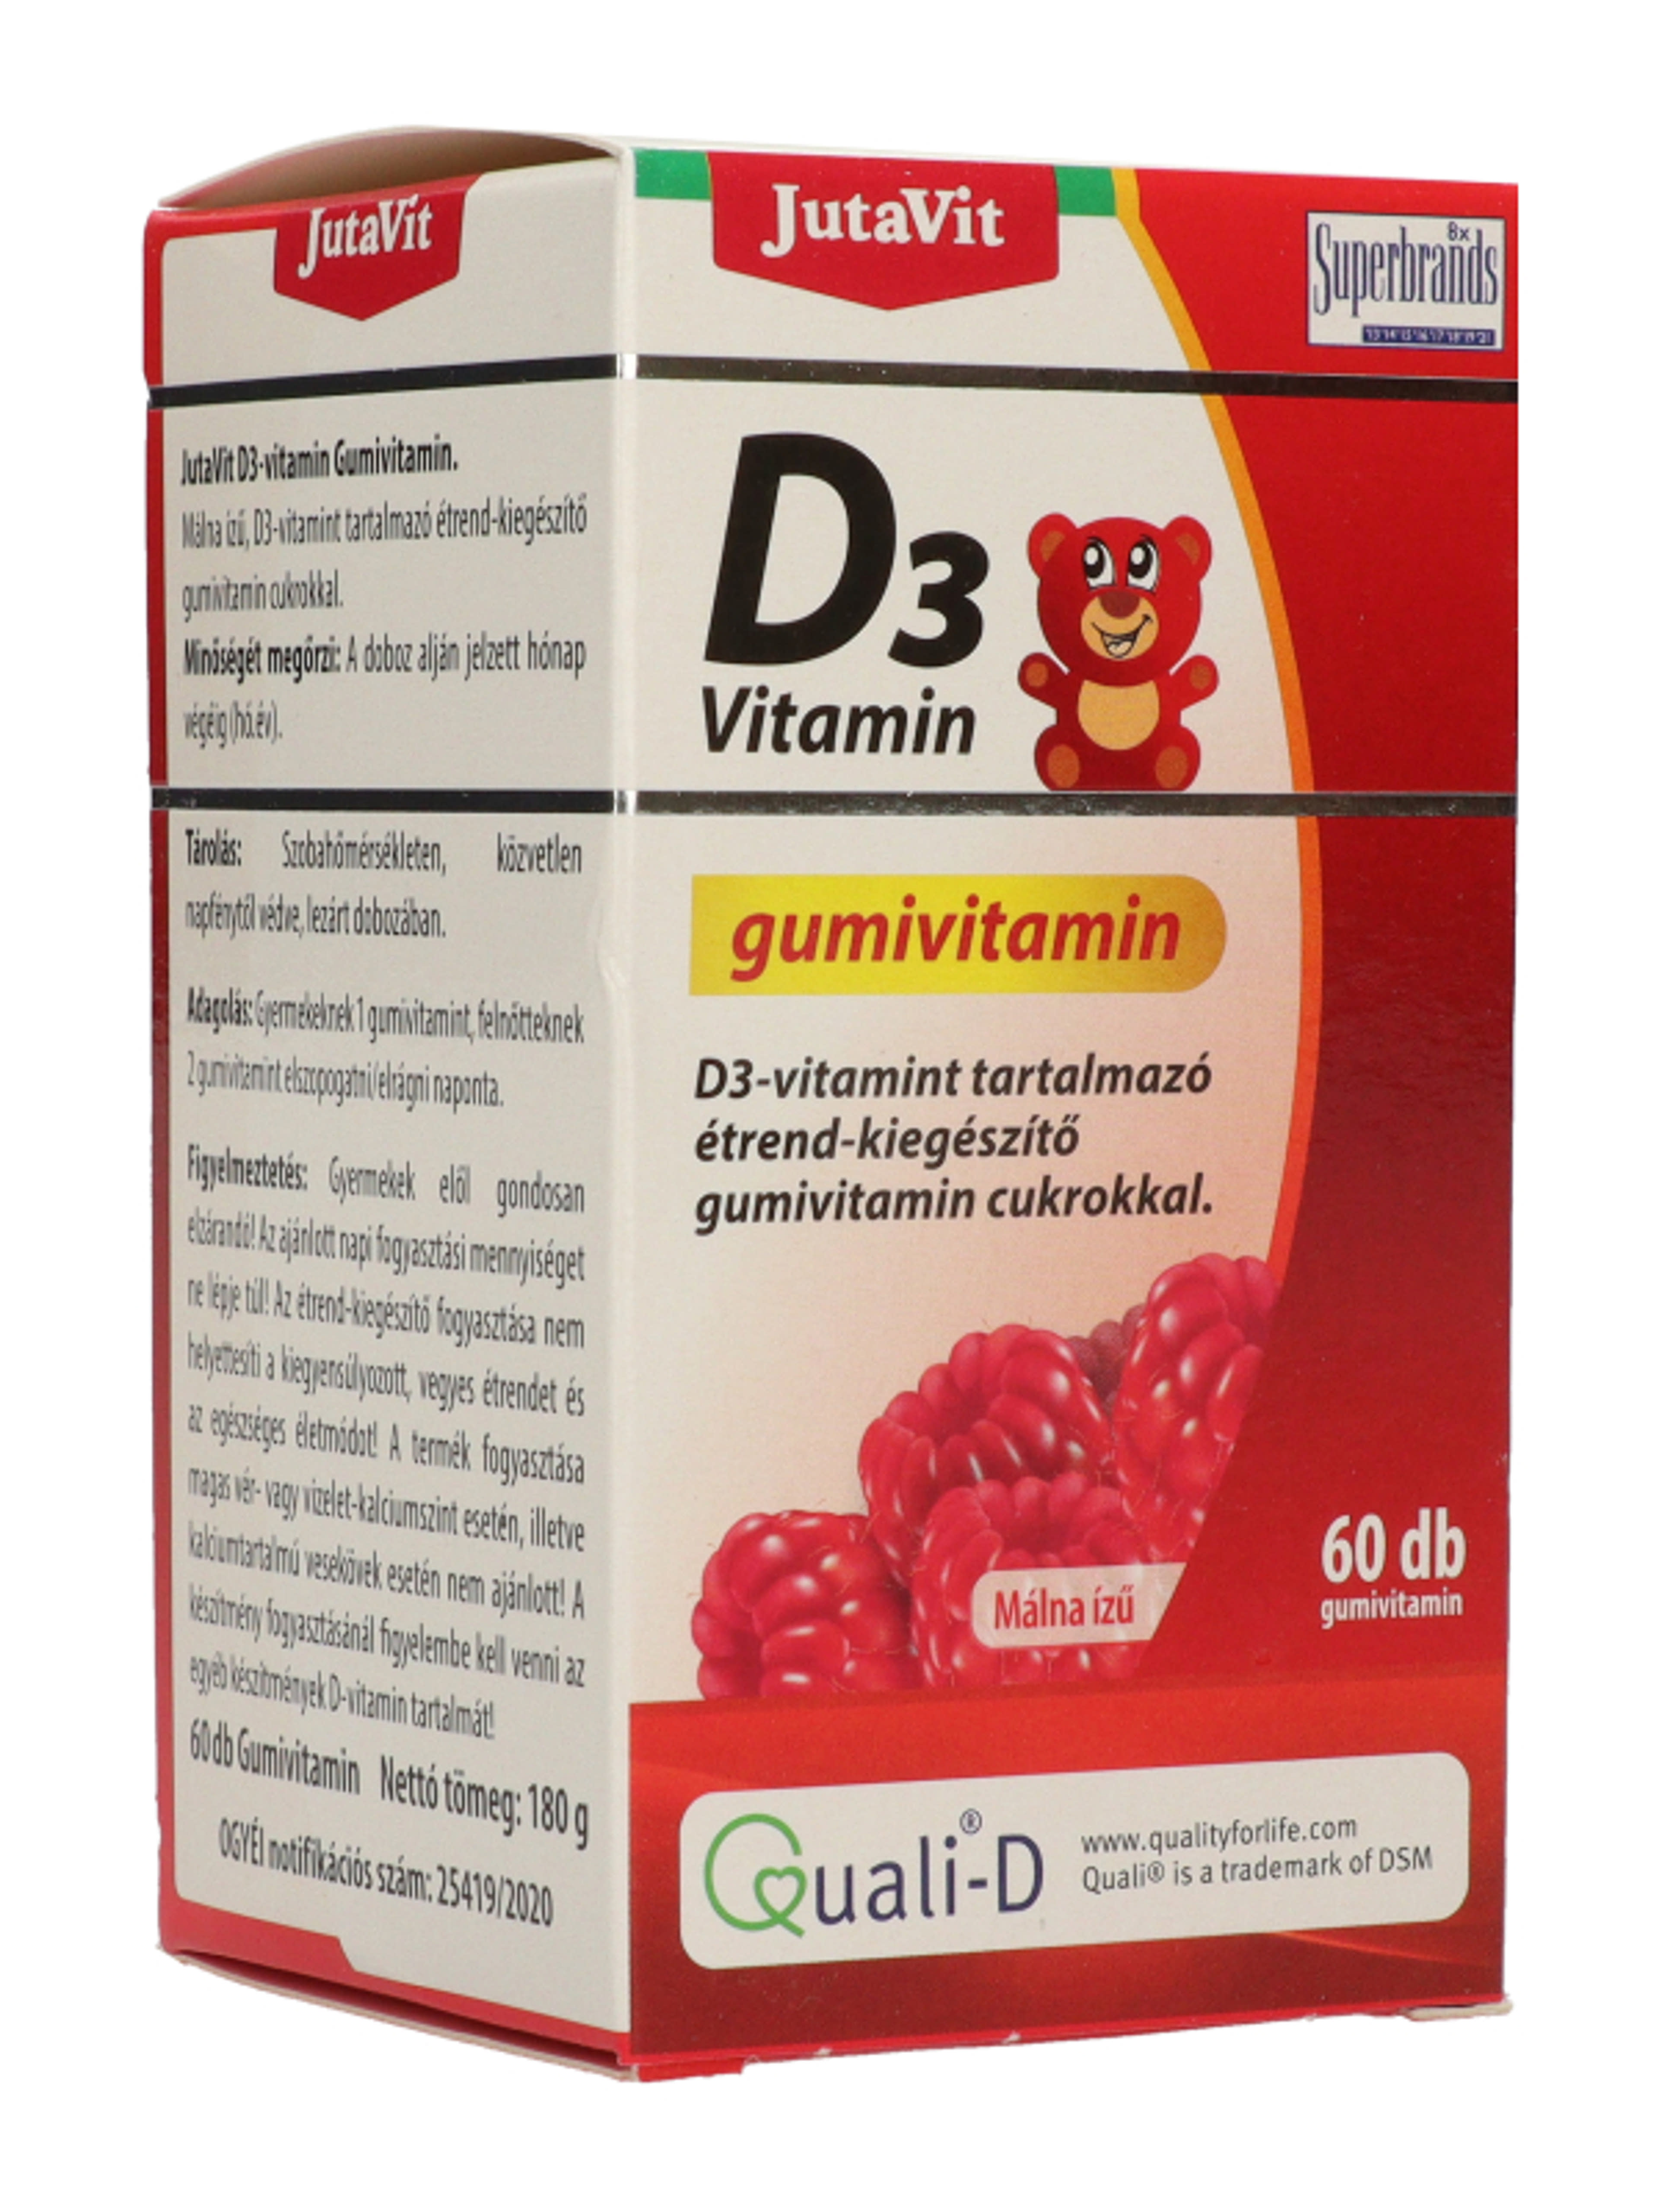 Jutavit D3-vitamin gumivitamin málna - 60 db-5